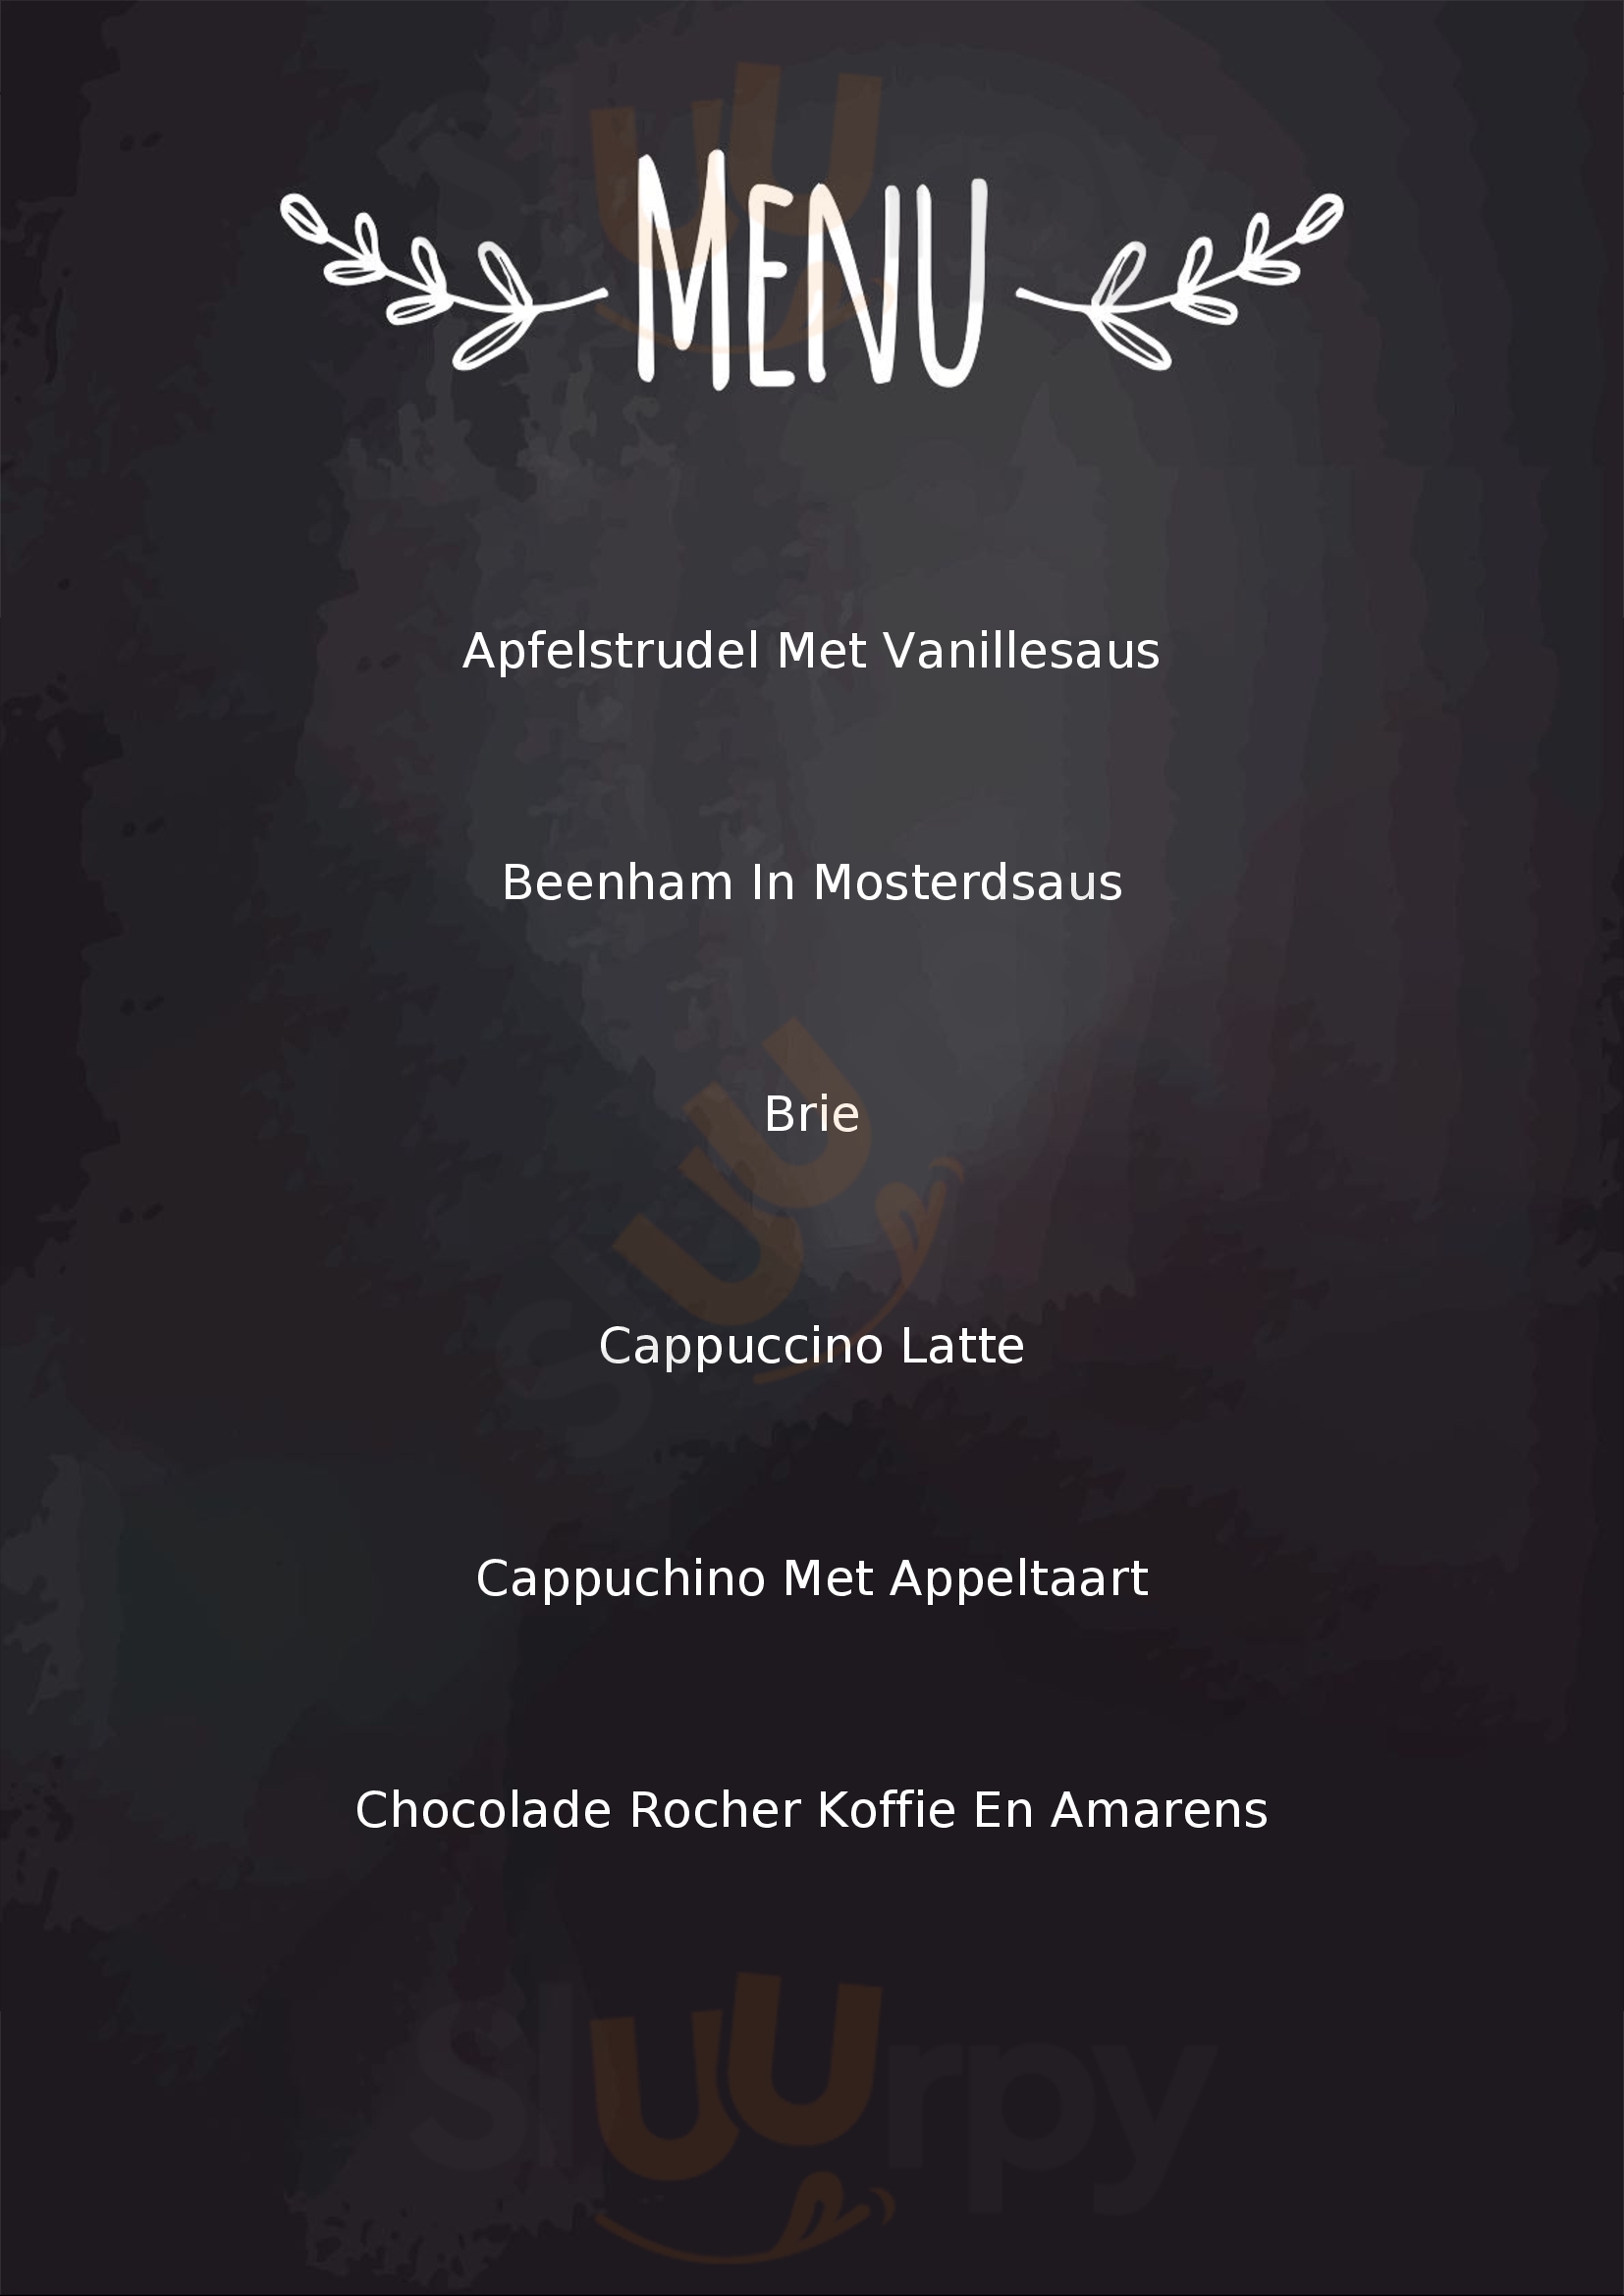 Gelato Cafe Dolce Vita Enschede Menu - 1